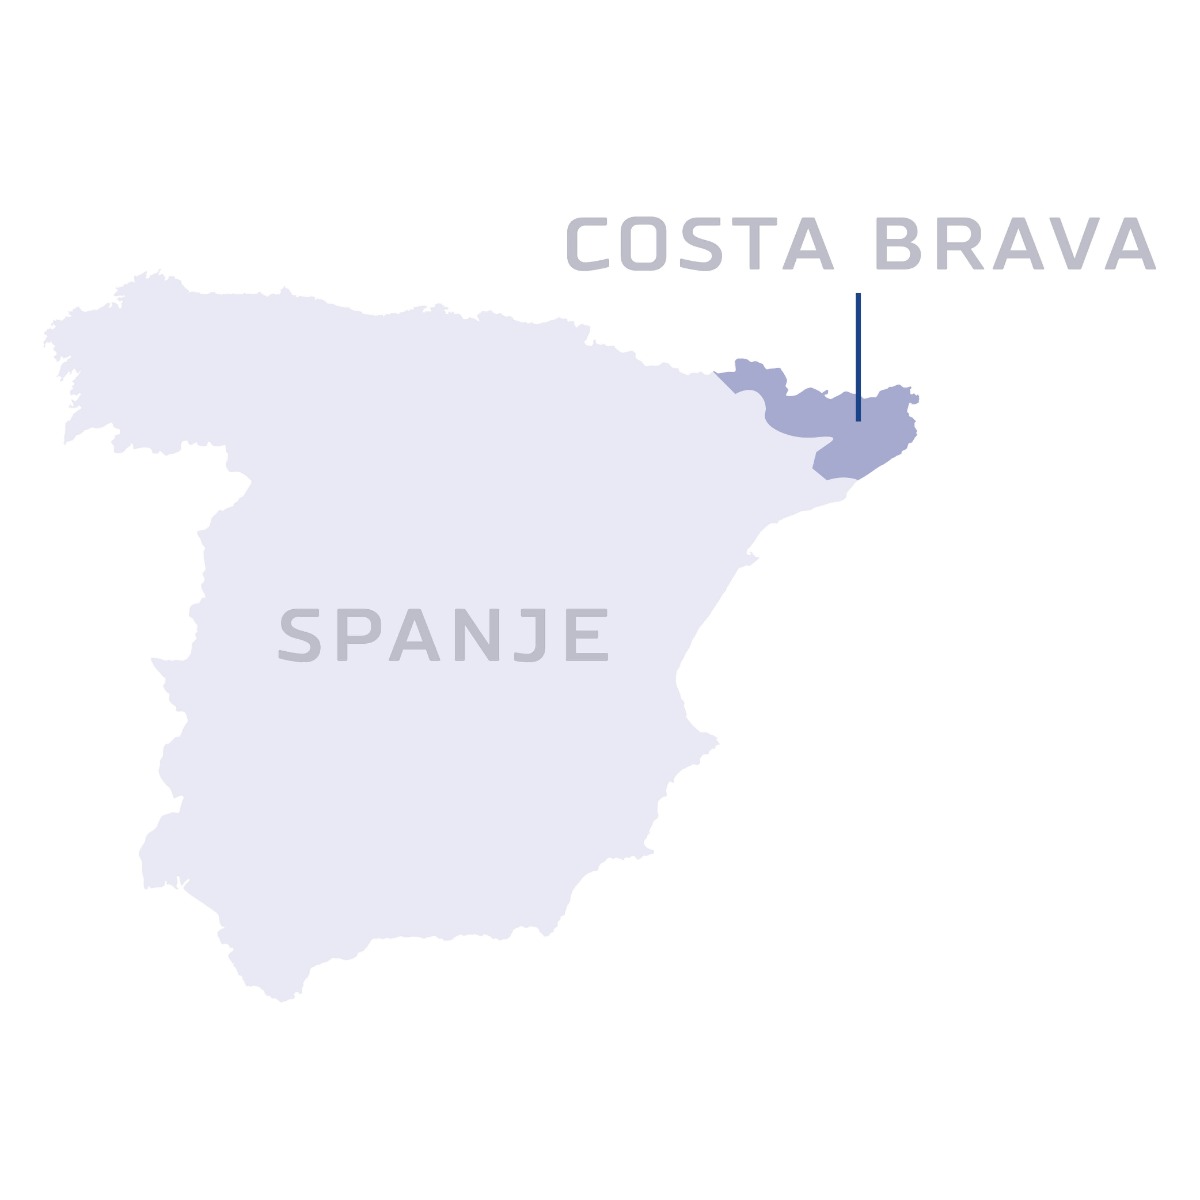 Een gedetailleerde kaart van Spanje met de betoverende Costa Brava regio prominent gemarkeerd langs de prachtige kustlijn van de Middellandse Zee.